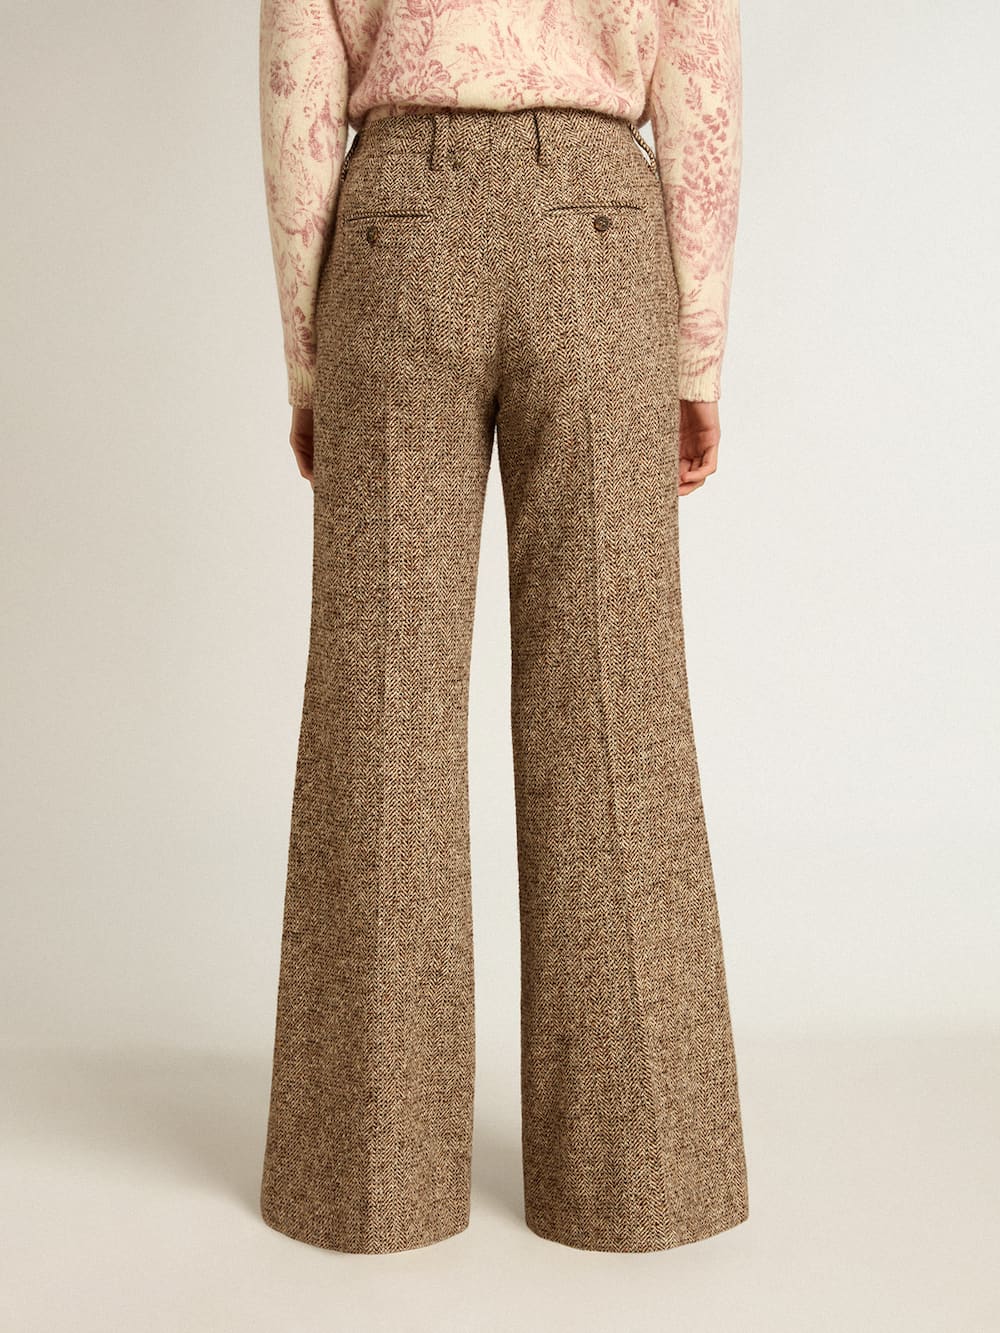 Golden Goose - Pantalón de mujer en mezcla de lana y seda color beige y marrón in 